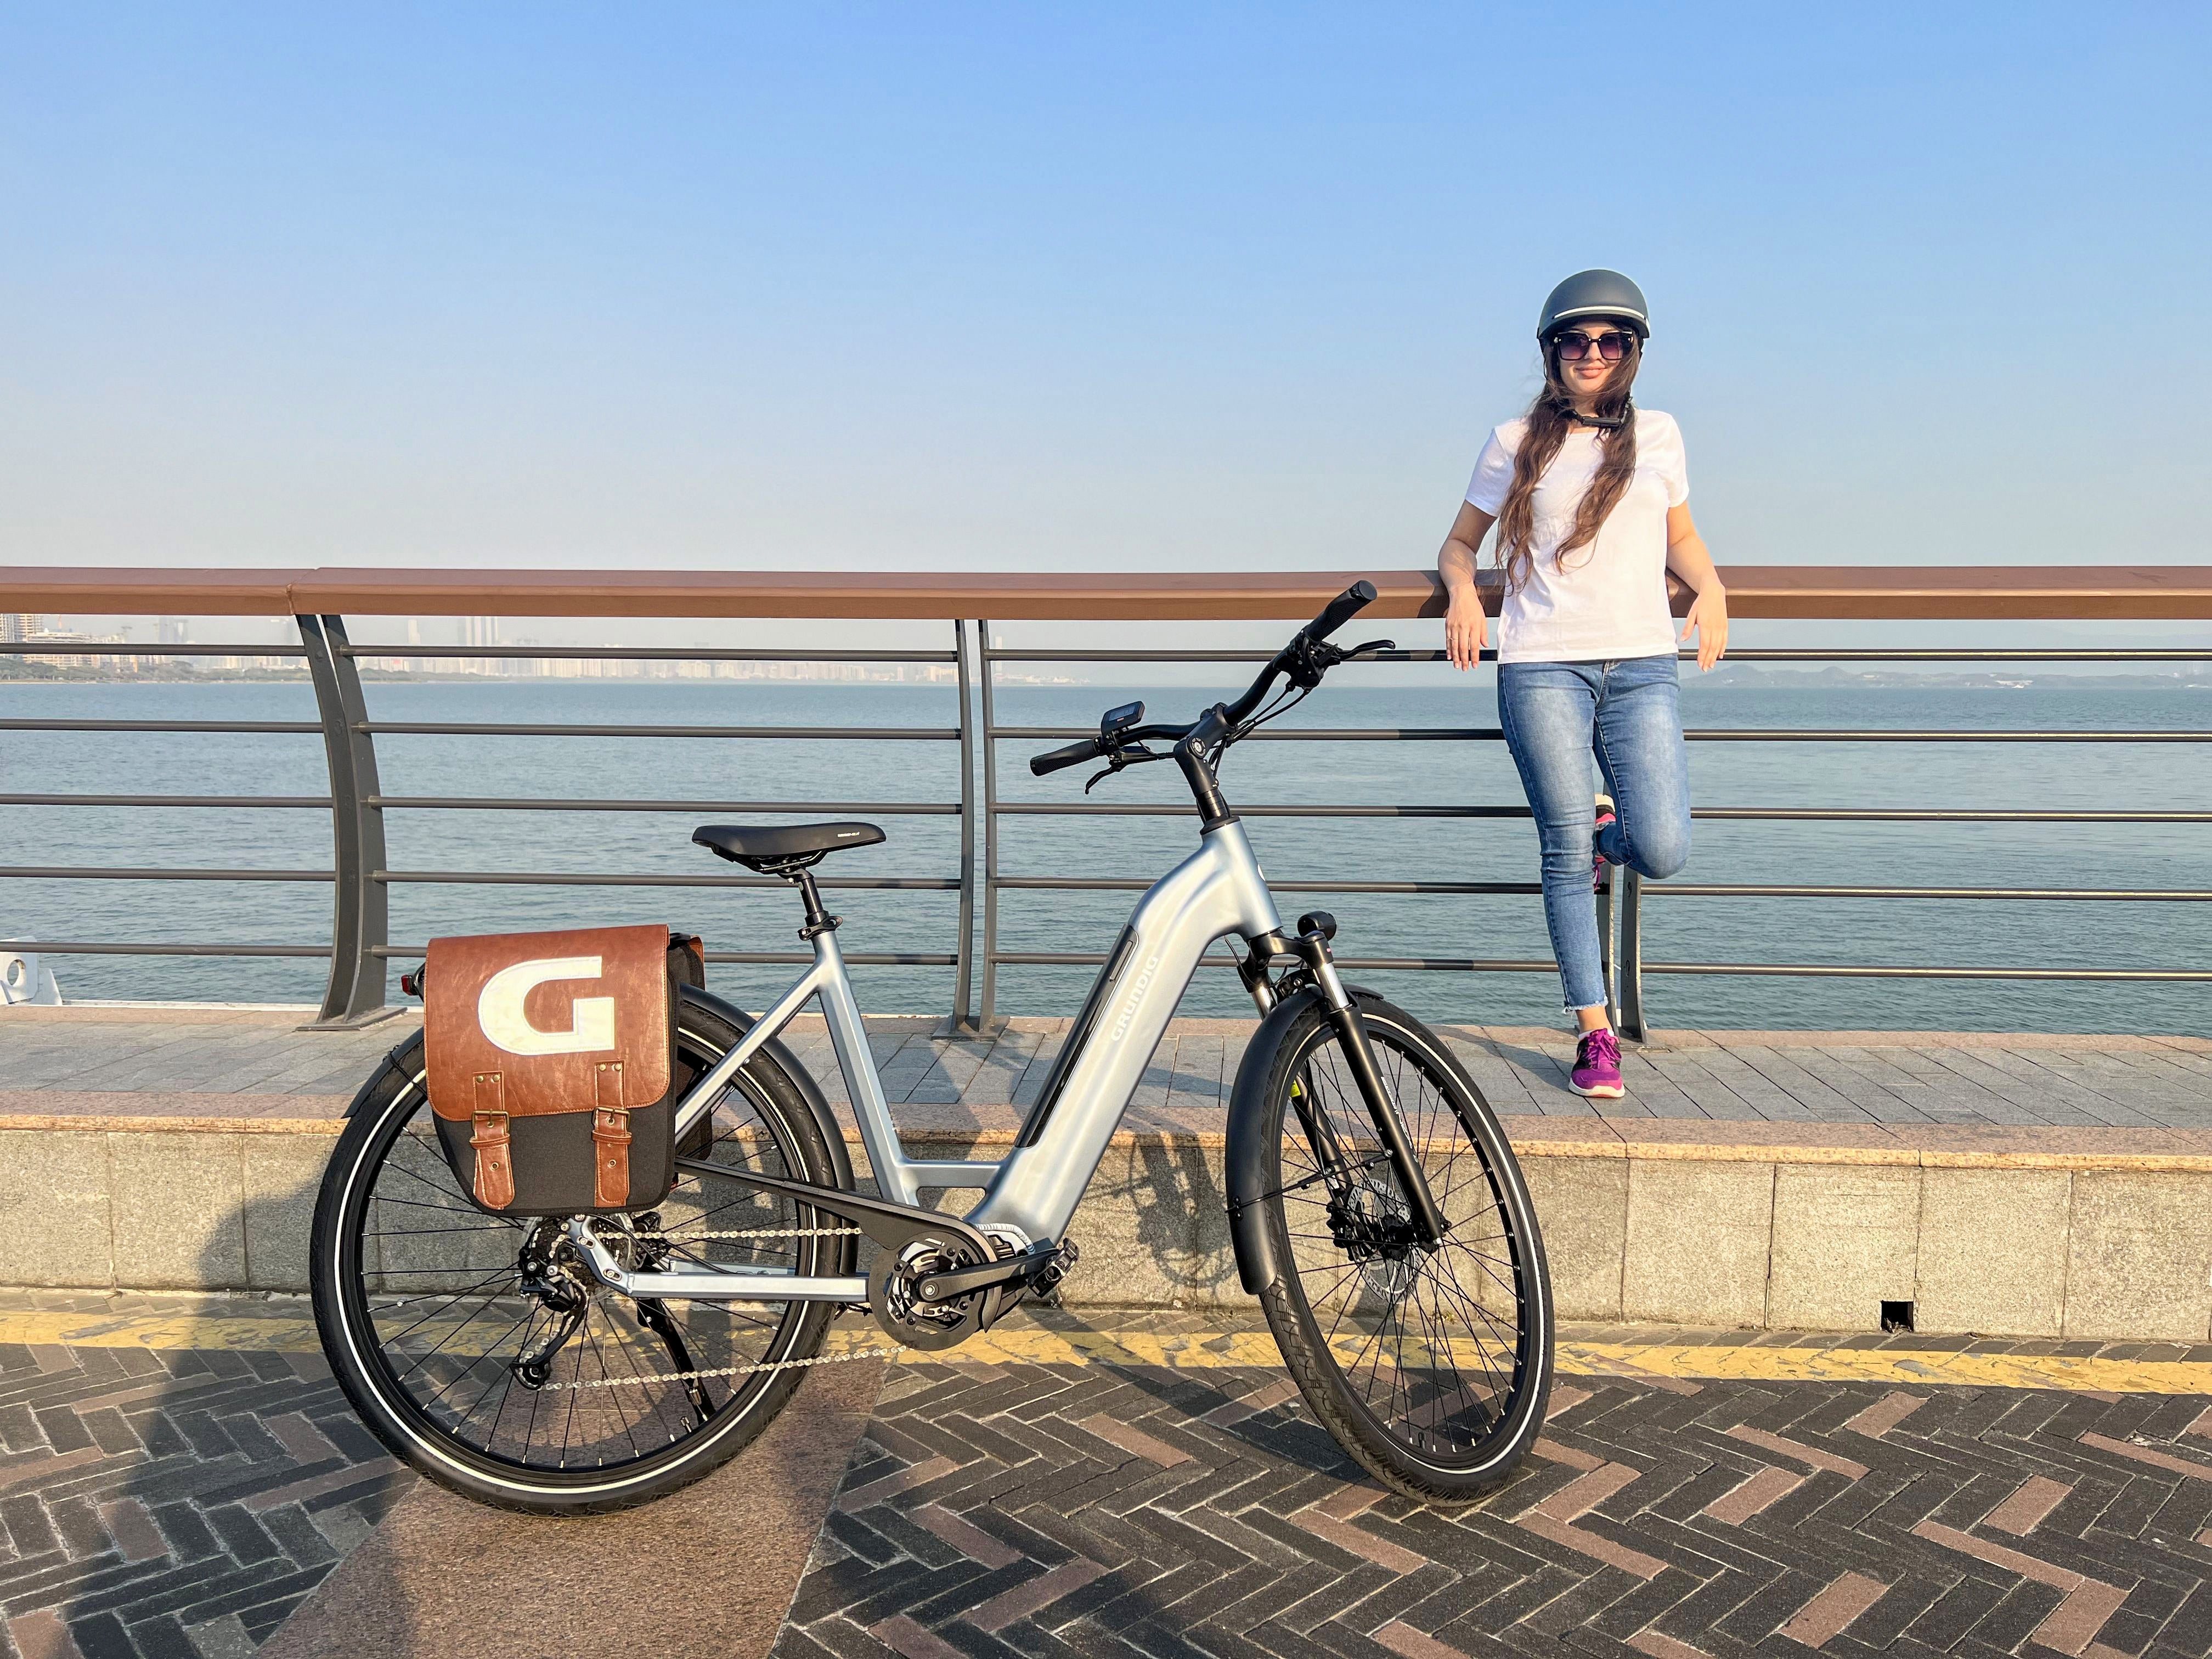 Frühjahrs-Wartungstipps für Ihr E-Bike: So halten Sie Ihr Fahrrad in Topform